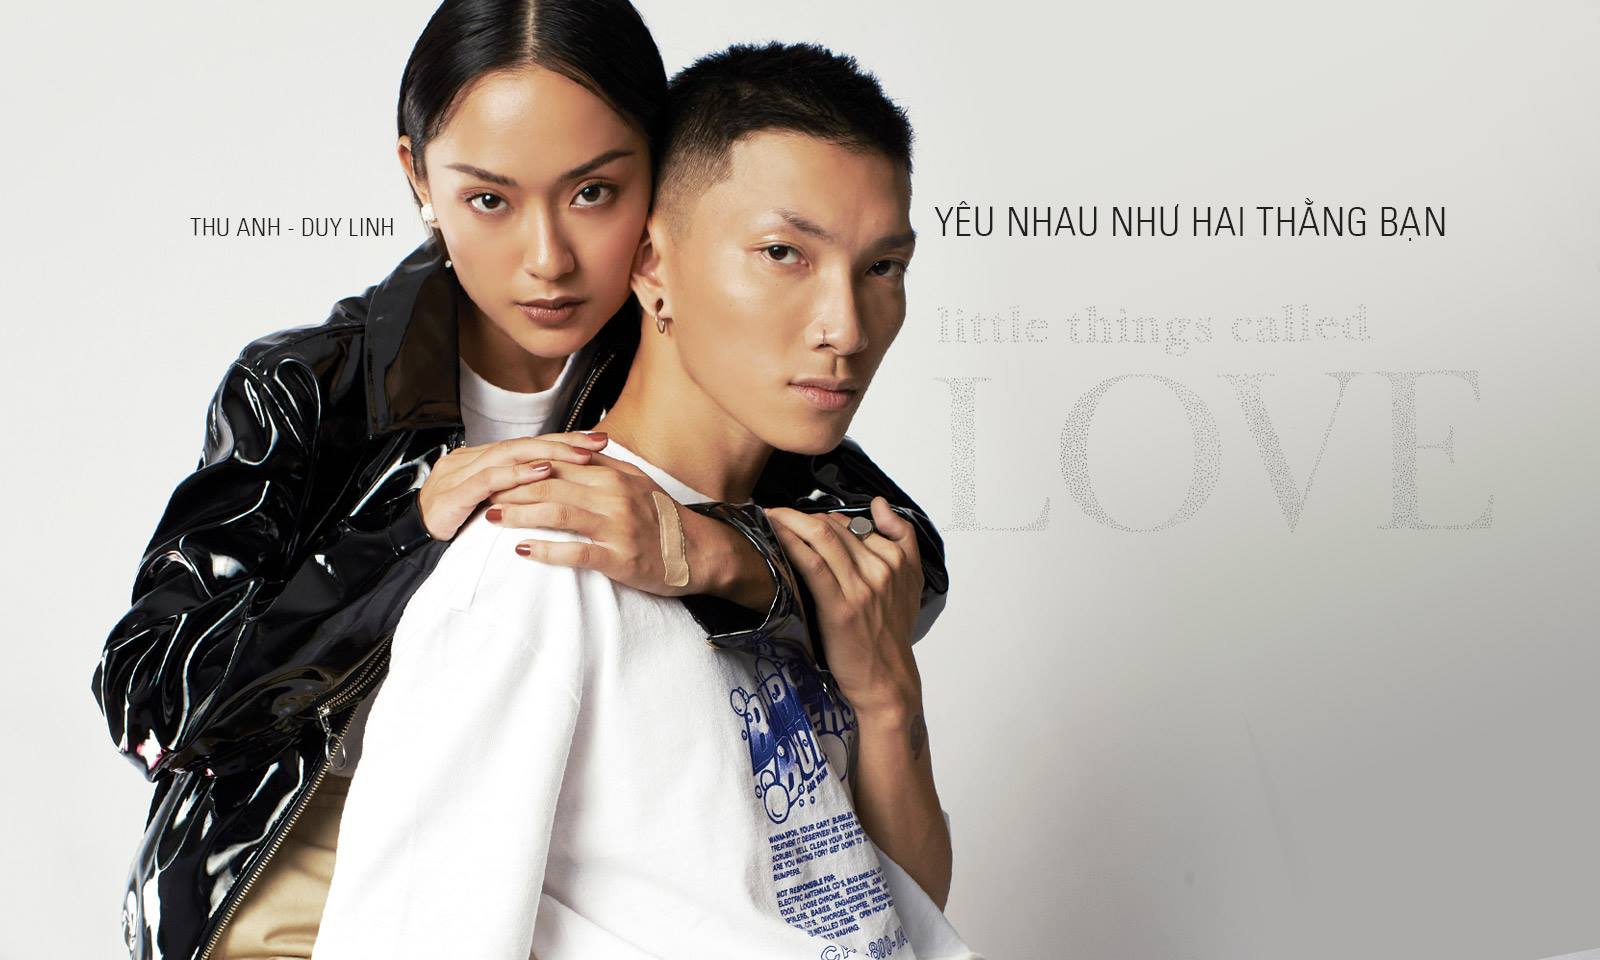 Người mẫu Thu Anh – Nhiếp ảnh gia Duy Linh: Yêu nhau như hai thằng bạn